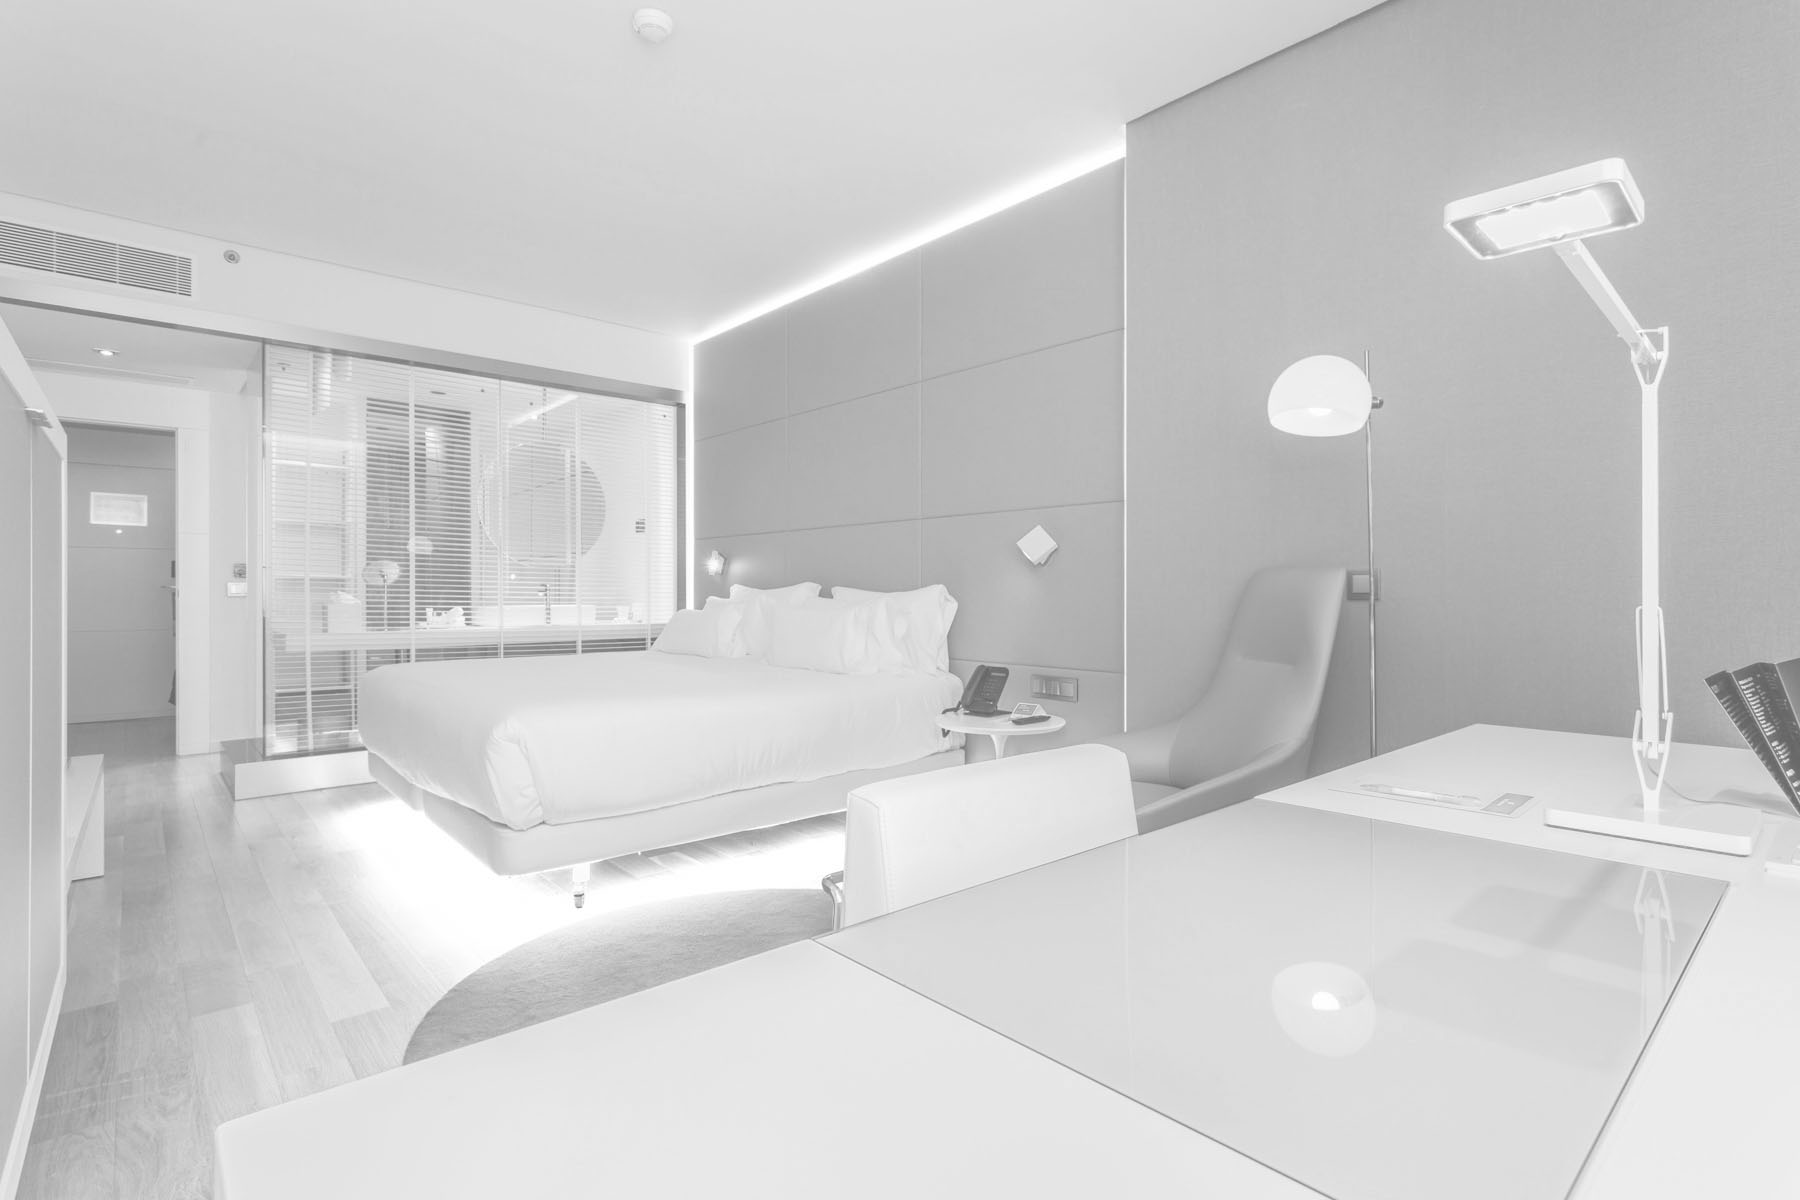 Habitación de hotel de 4 estrellas con el escritorio en primer término, una gran cama y un baño separado por una cristalera semi transparente